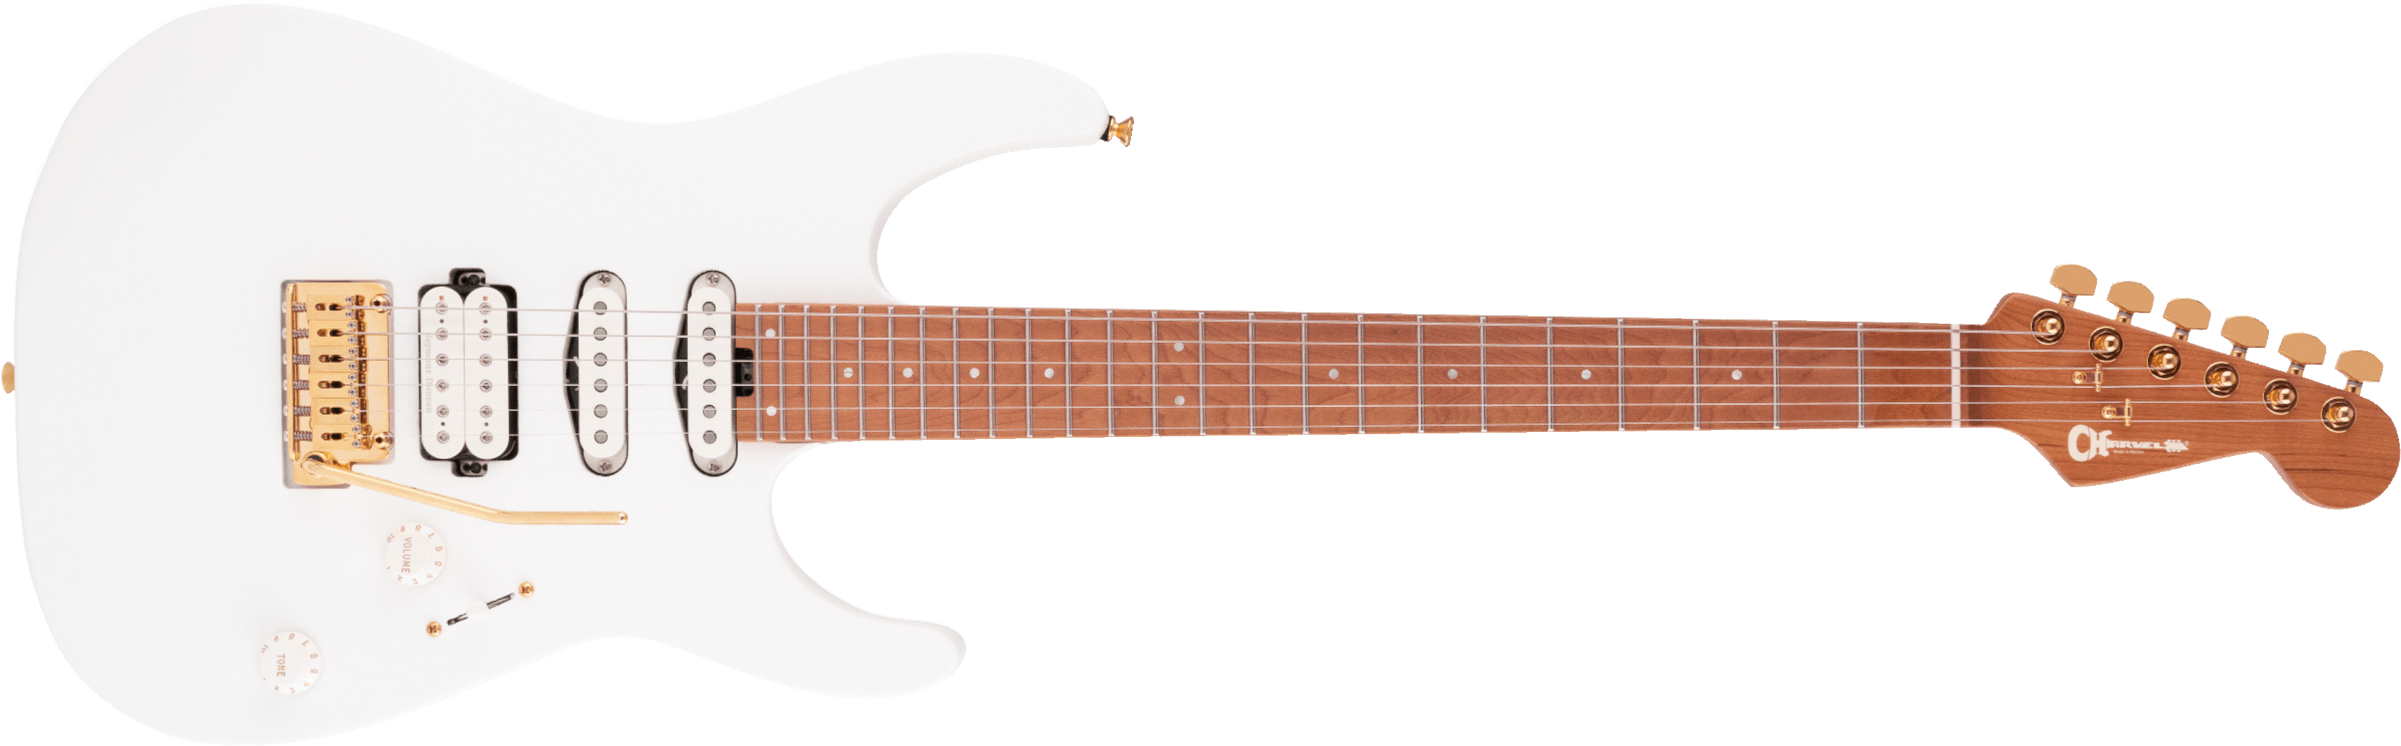 Charvel Dinky Dk24 Hss 2pt Cm Pro-mod Seymour Duncan Trem Mn - Snow White - Str shape electric guitar - Main picture